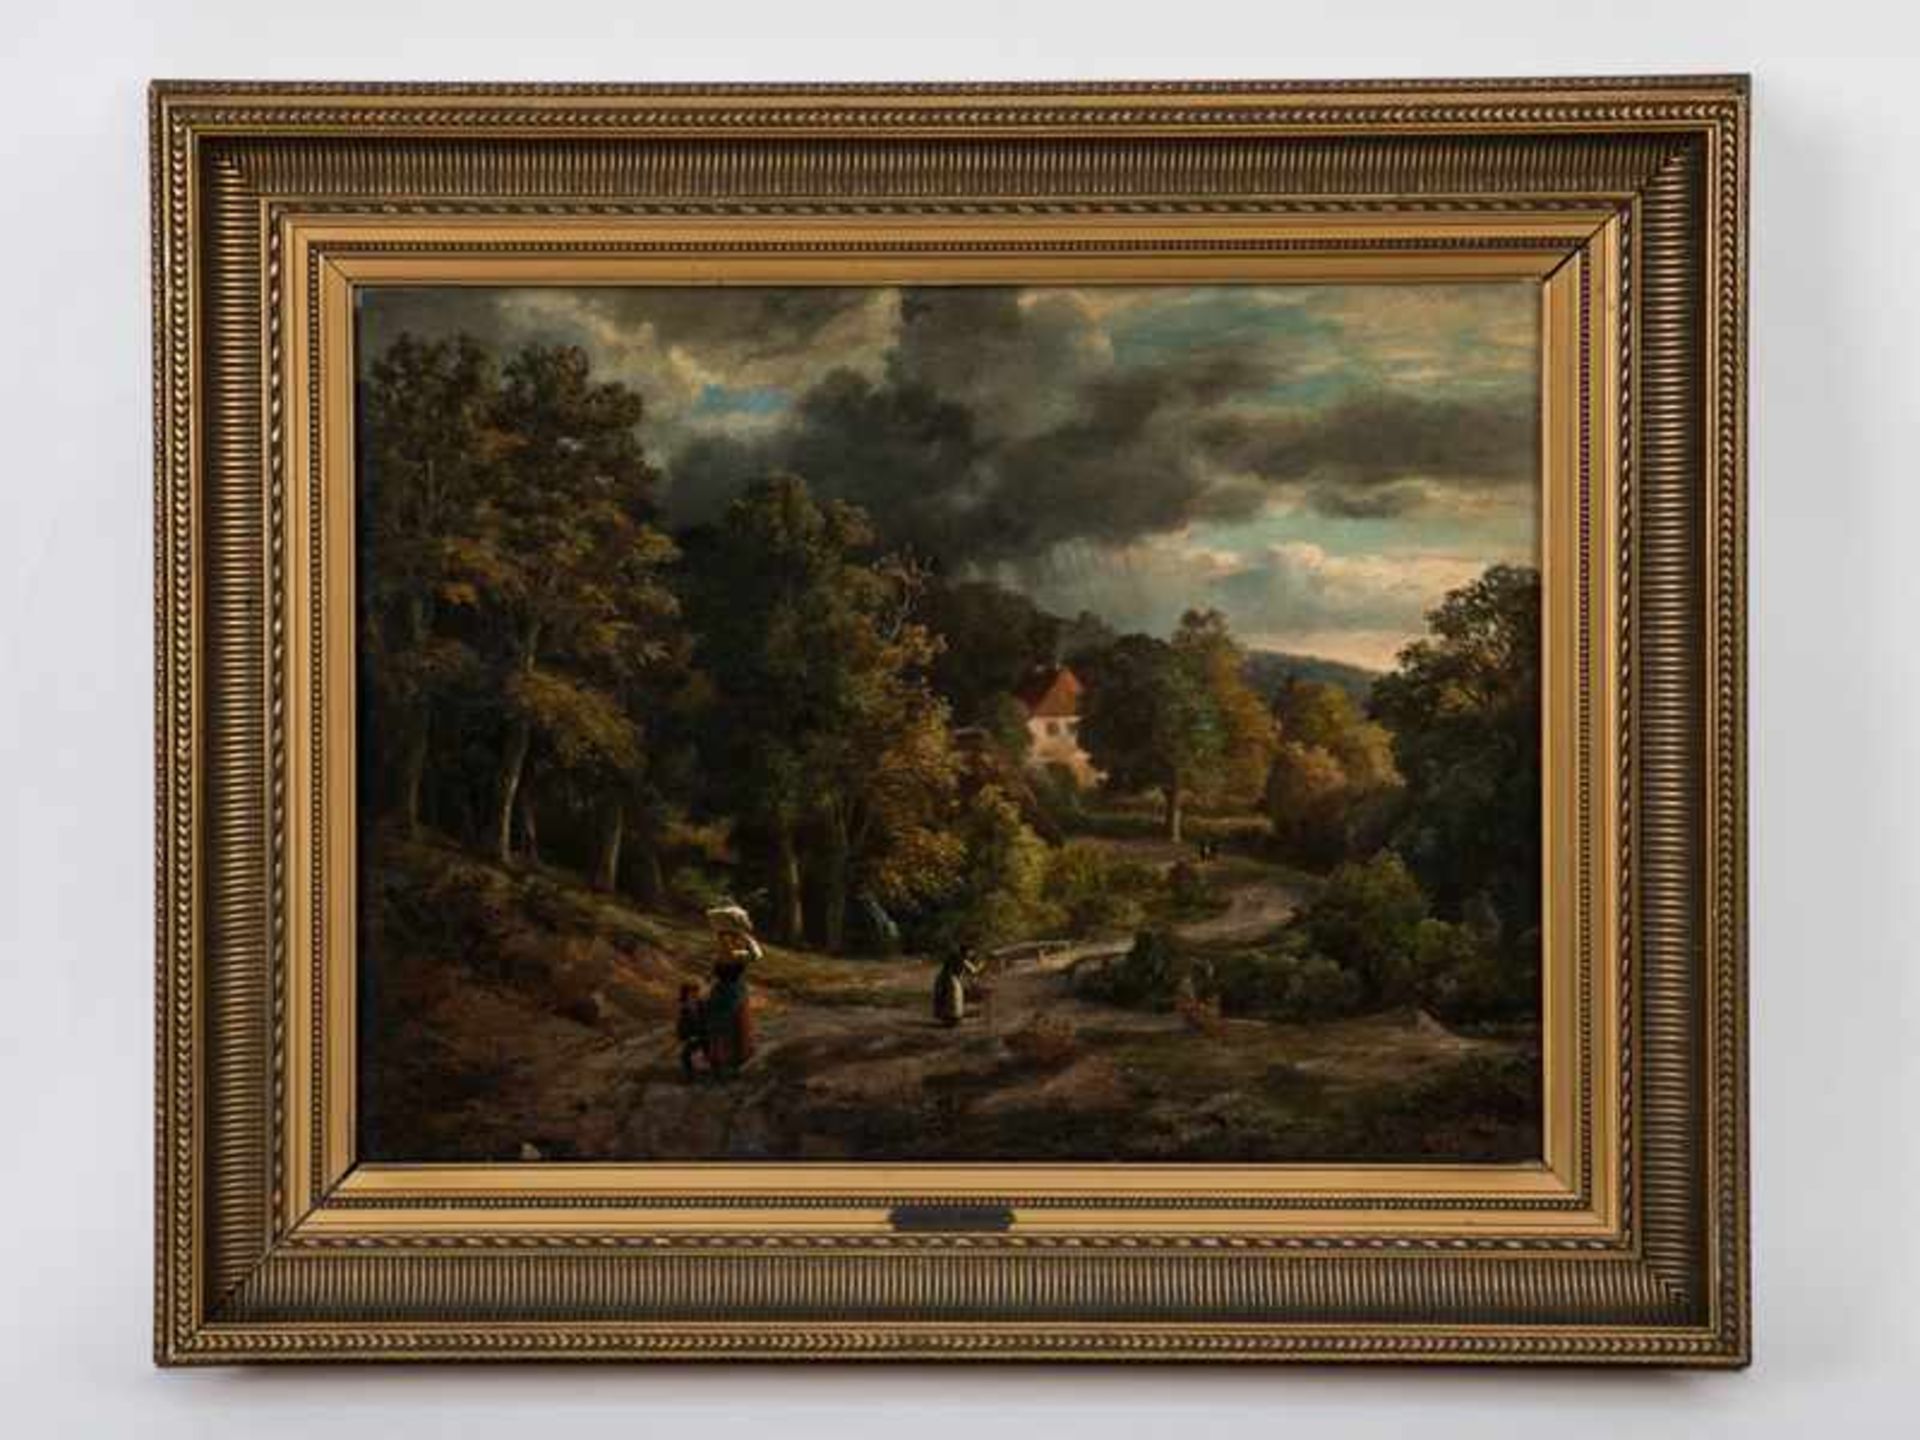 Vollmer, Adolph Friedrich (1806 - 1875) Öl auf Holz; bewaldete norddeutsche Hügellandschaft mit